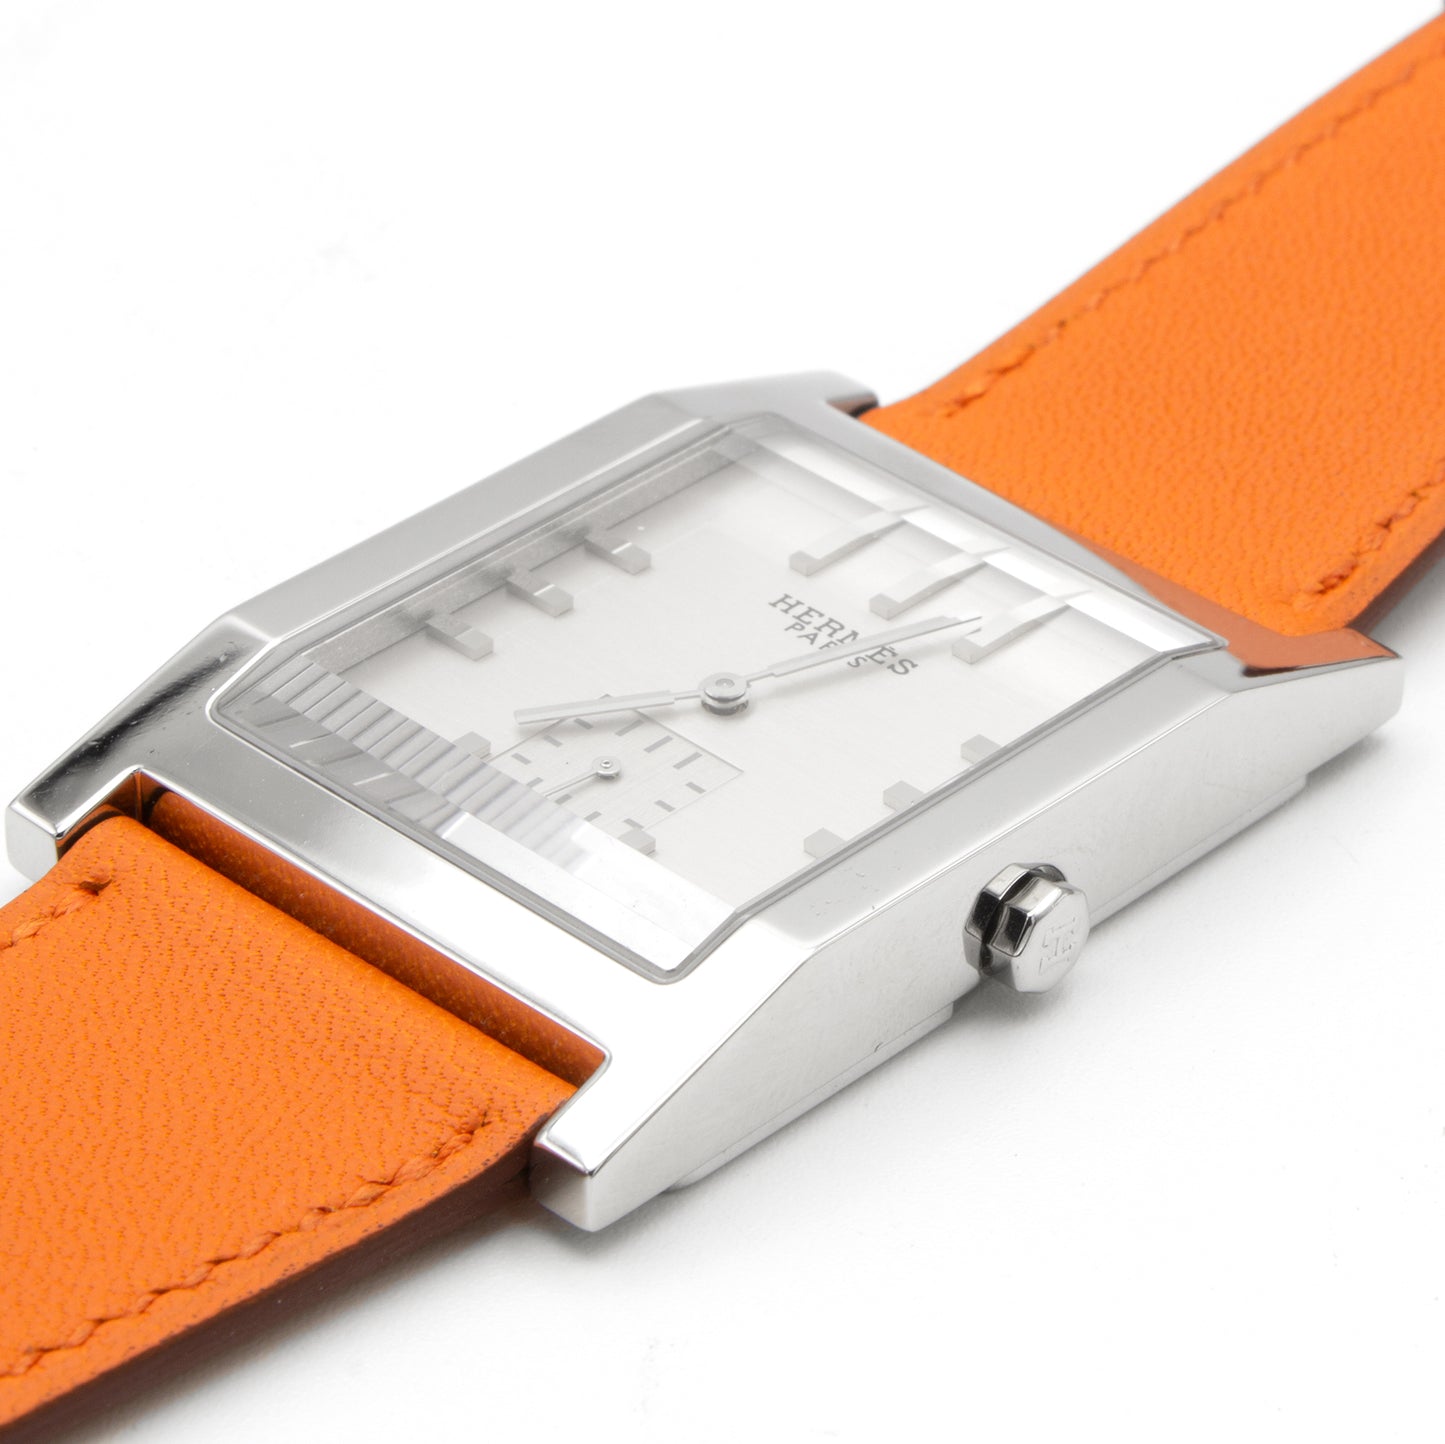 Hermès Tandem TA1.810 watch